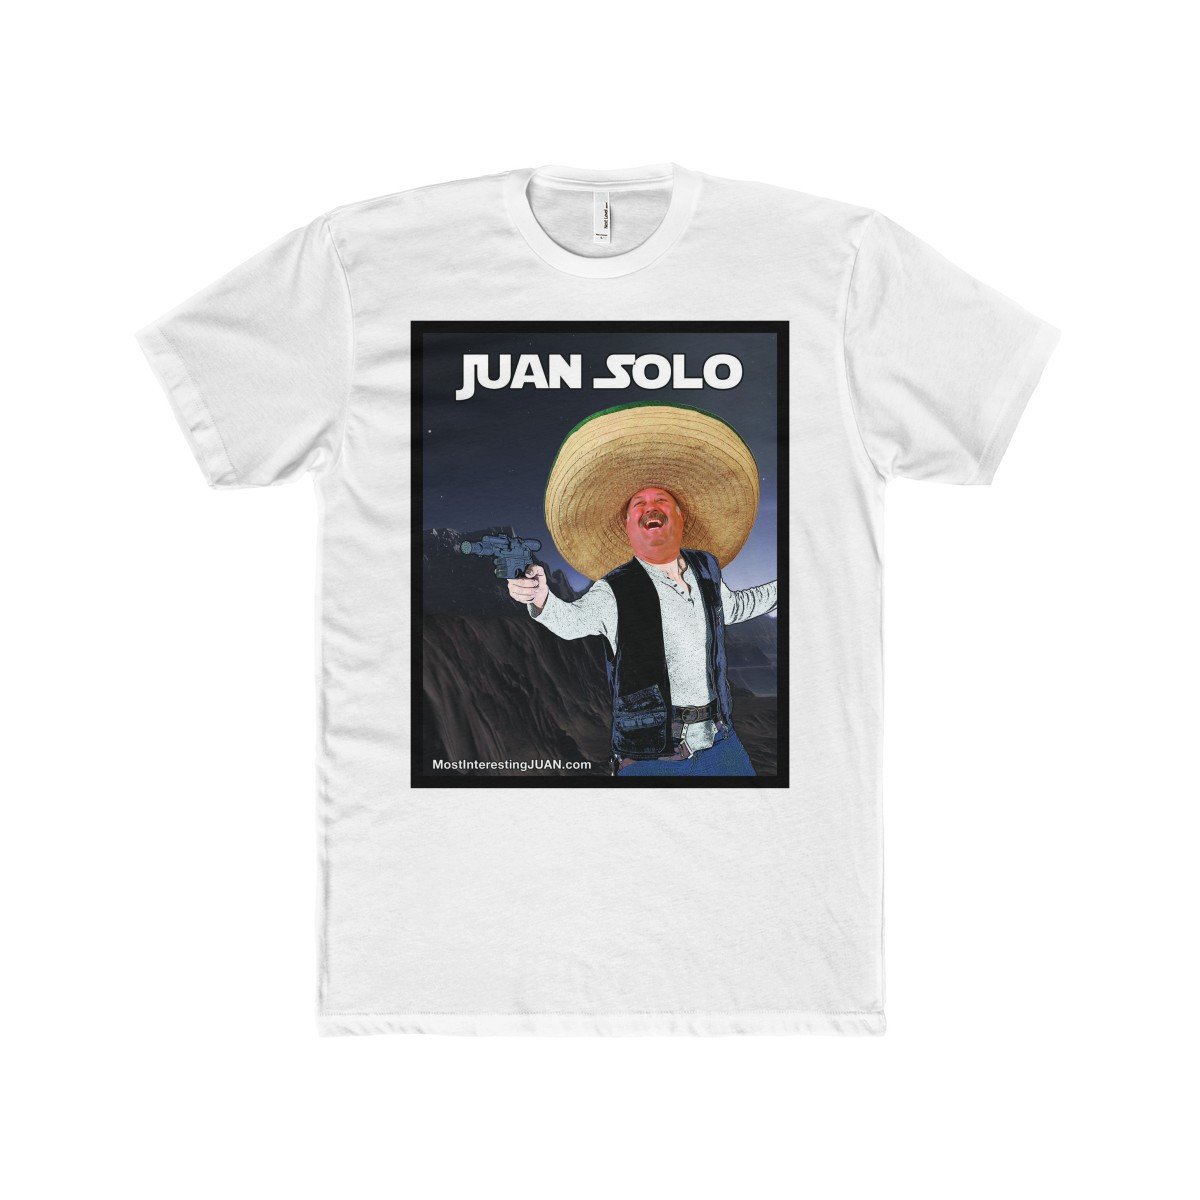 Juan Solo - Men's T-shirt